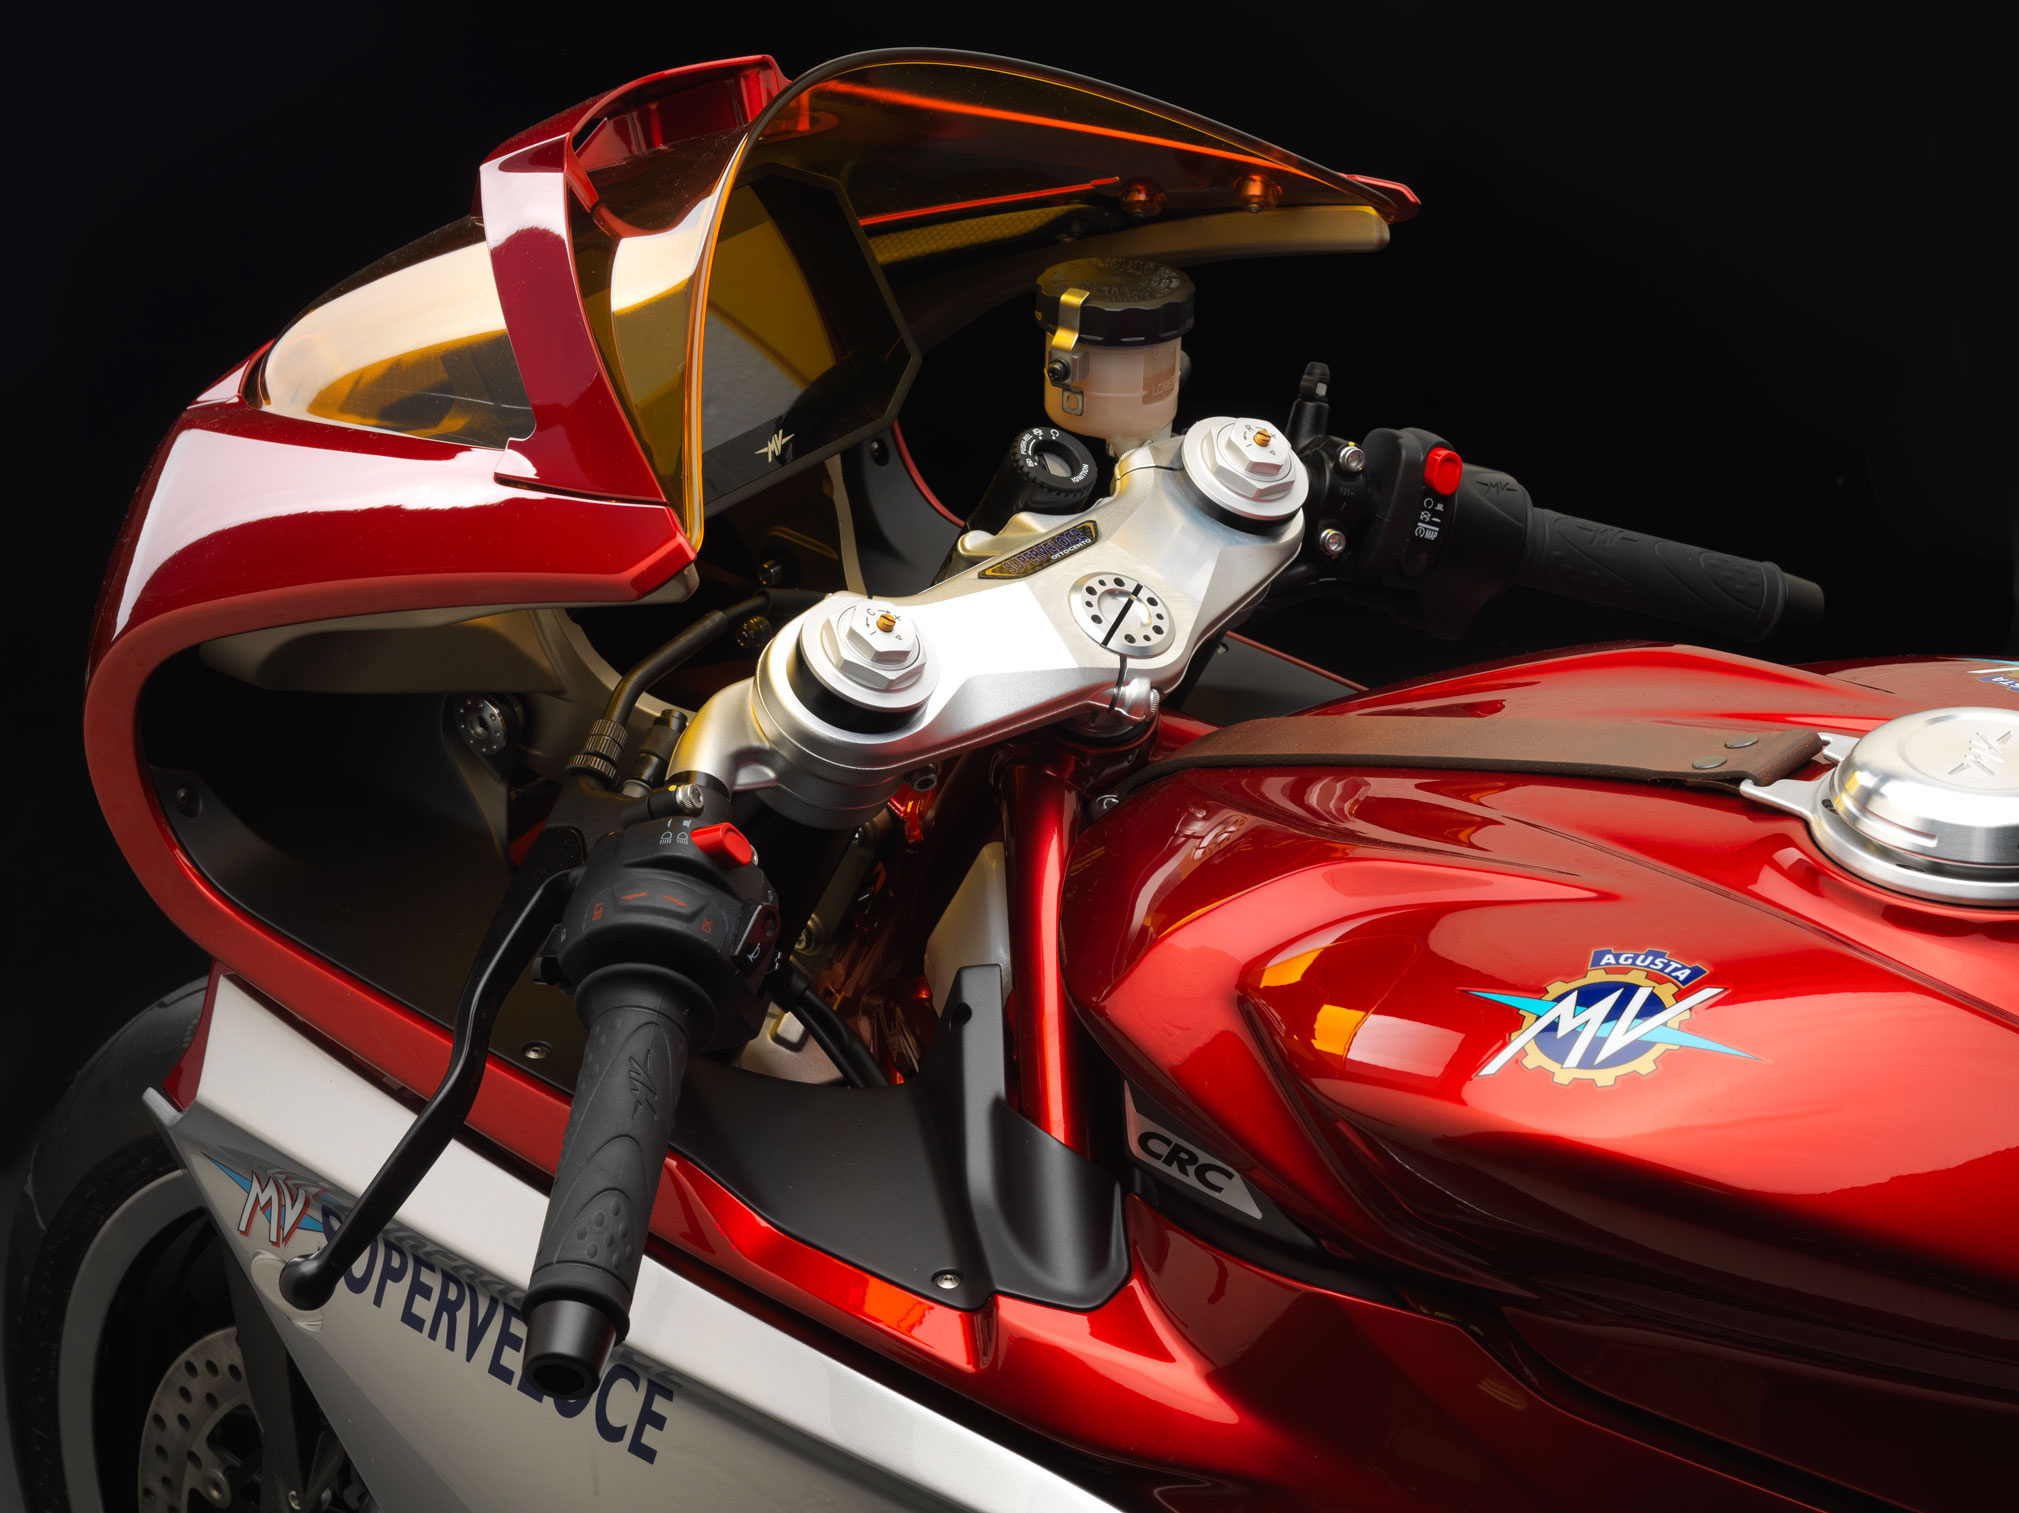 MV Agusta Superveloce, 2019 mv agusta, Superveloce 800 concept, total motorcycle, 2020x1520 HD Desktop